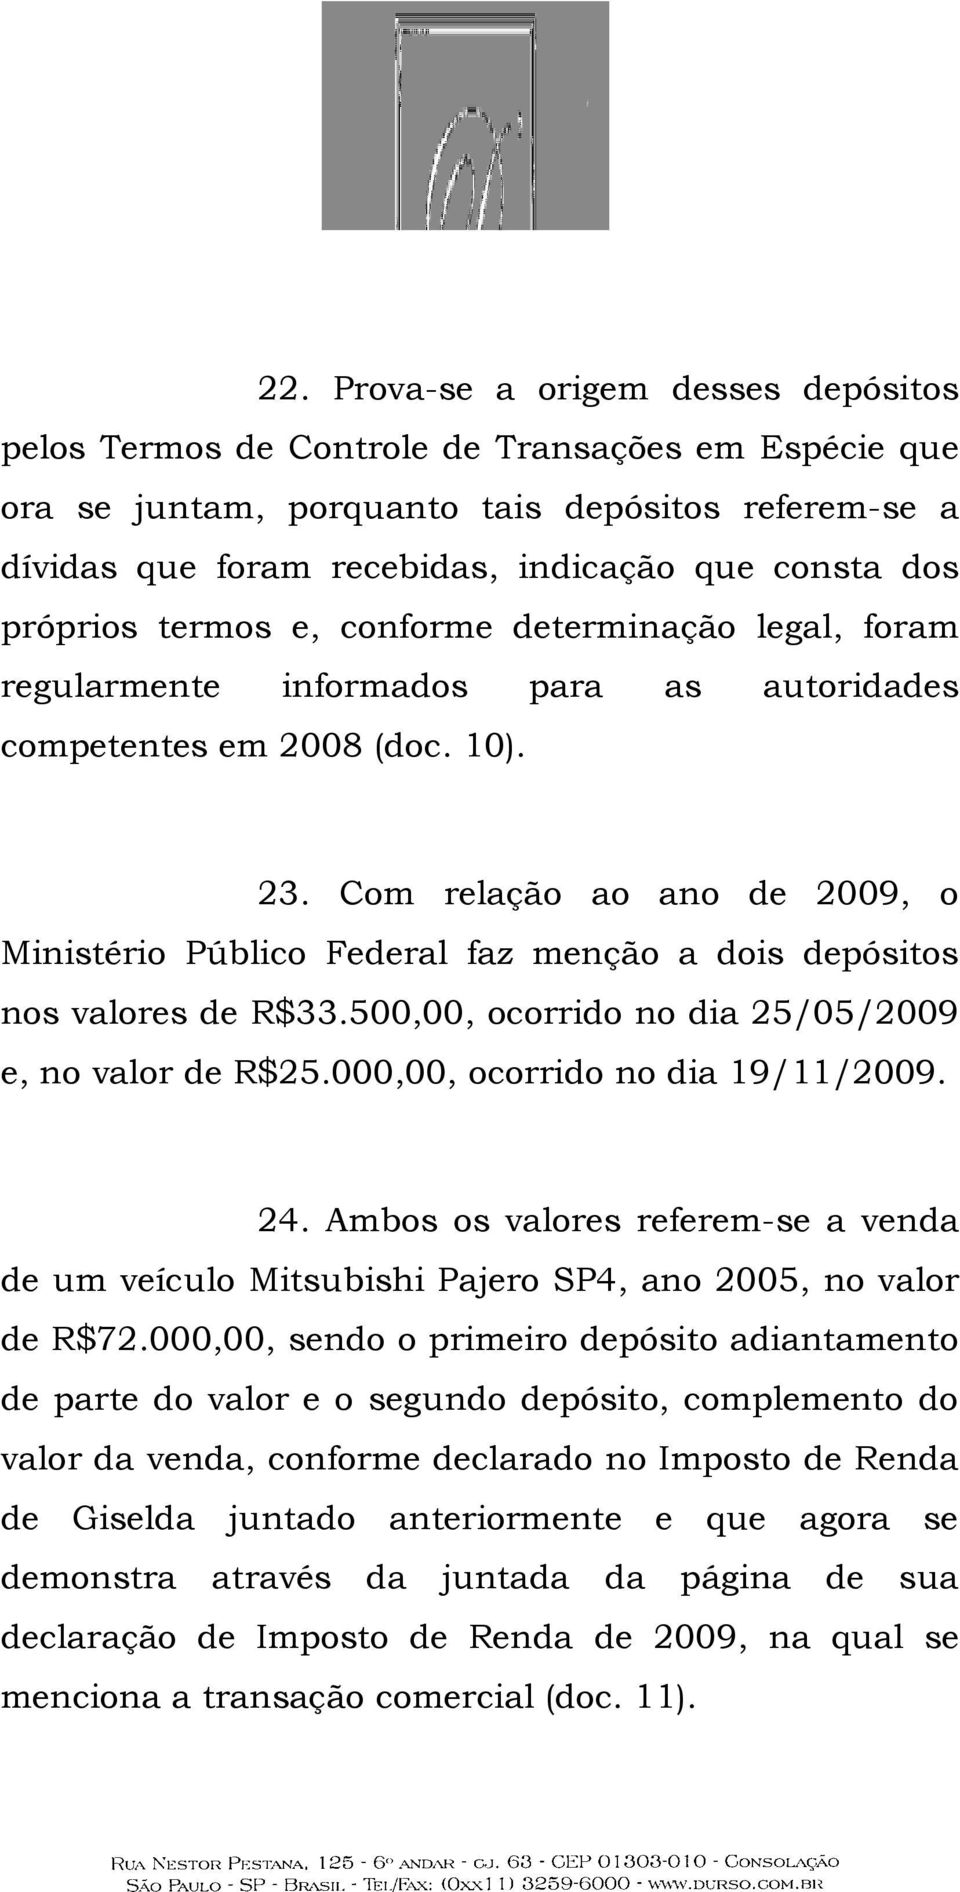 Com relação ao ano de 2009, o Ministério Público Federal faz menção a dois depósitos nos valores de R$33.500,00, ocorrido no dia 25/05/2009 e, no valor de R$25.000,00, ocorrido no dia 19/11/2009. 24.